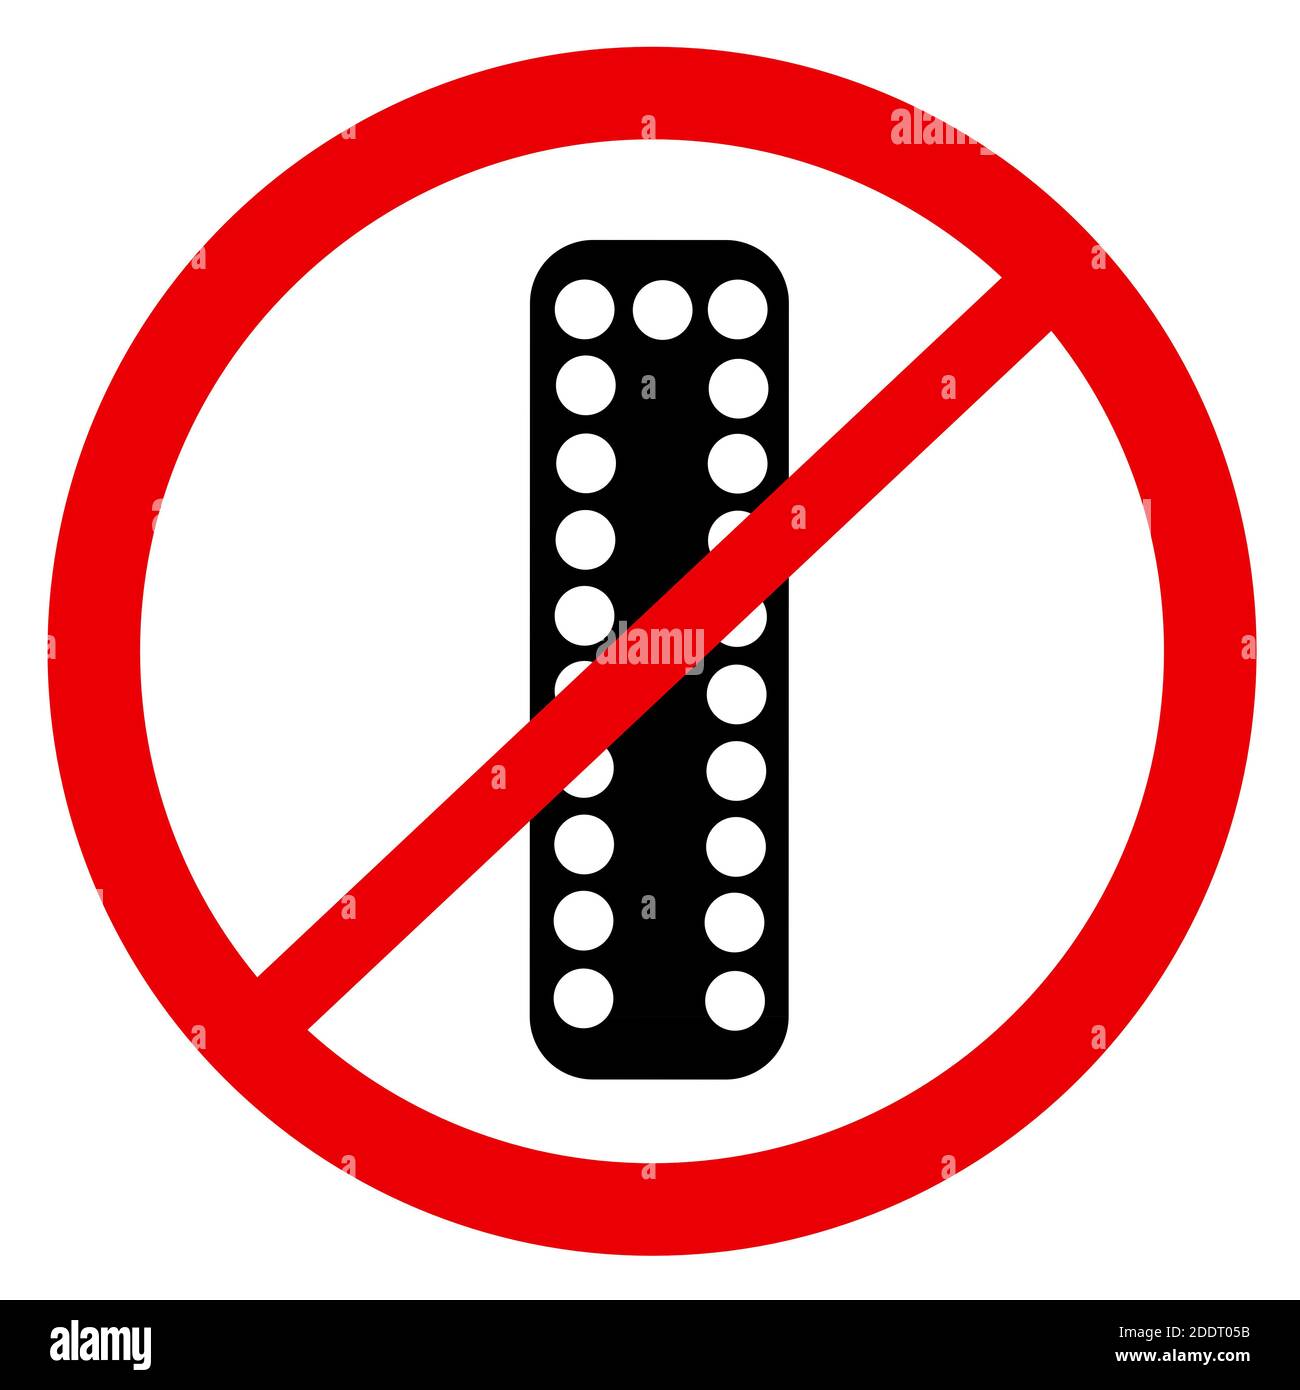 Vecteur symbole de l'interdiction et de la prohition d'utiliser et de prescrire des pilules contraceptives - négativité de la contraception hormonale en raison des effets secondaires malsains, Banque D'Images